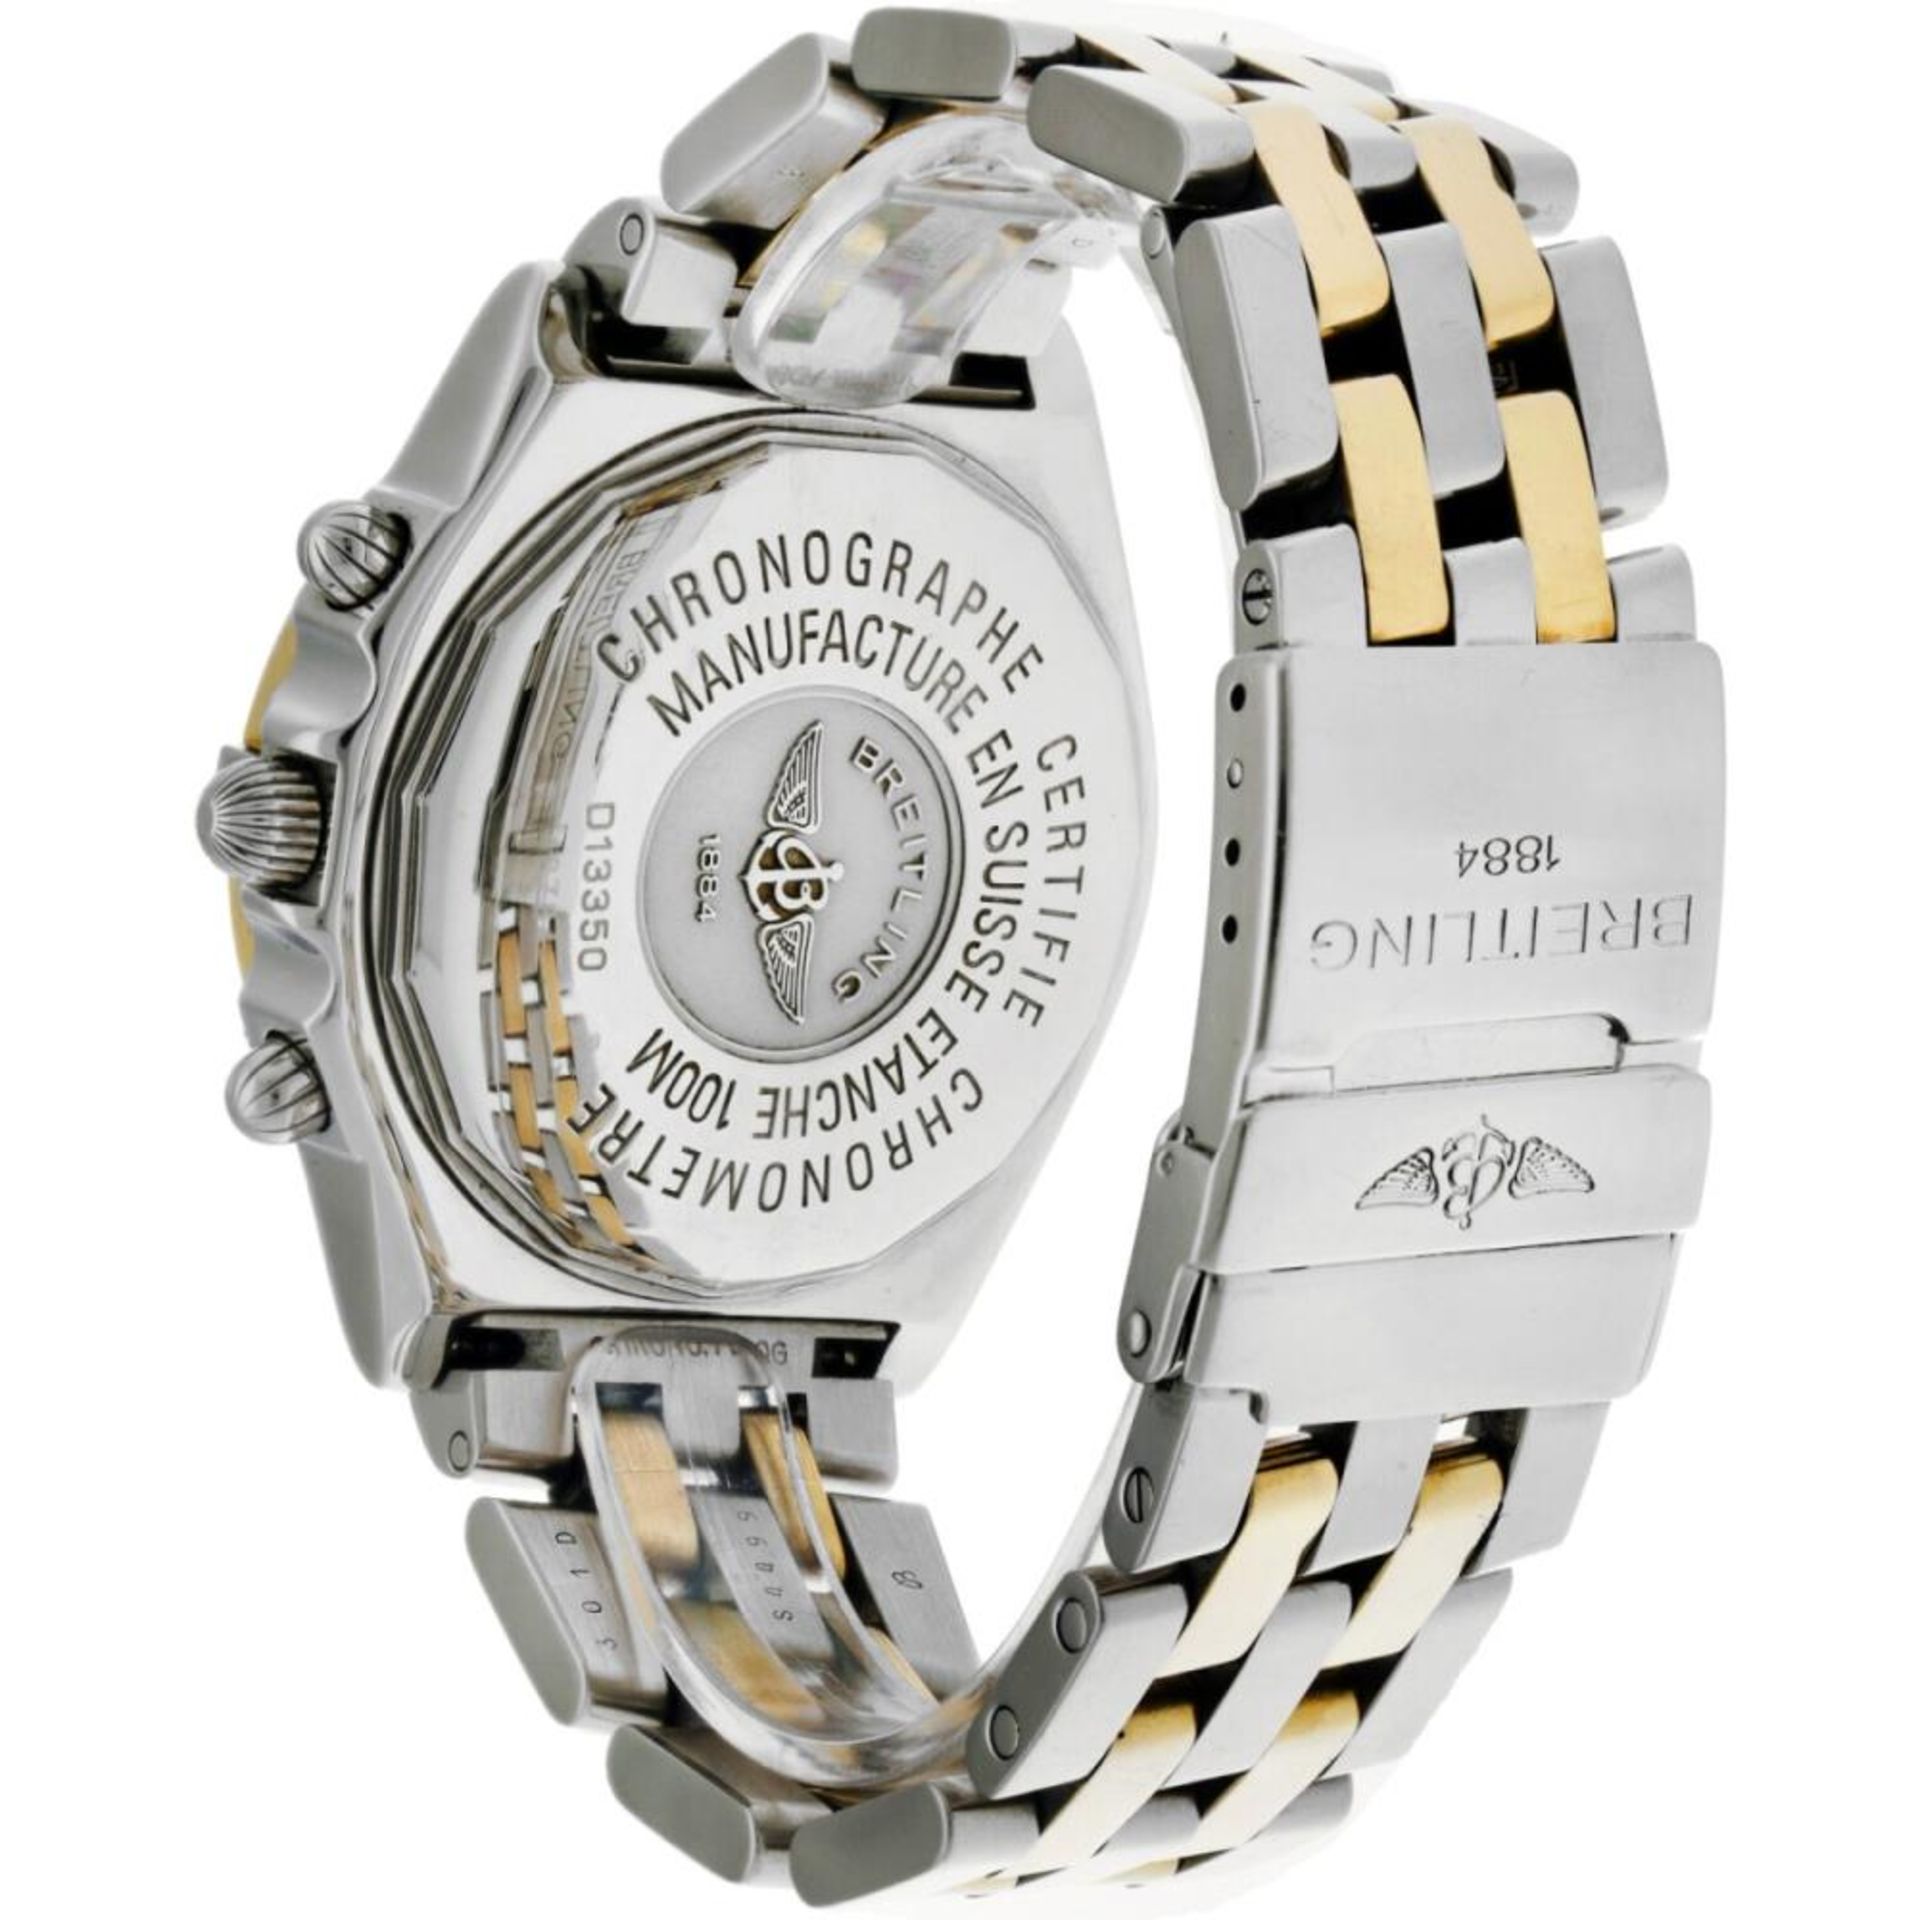 Breitling Chronomat D13350 - Men's watch - 2000. - Image 3 of 6